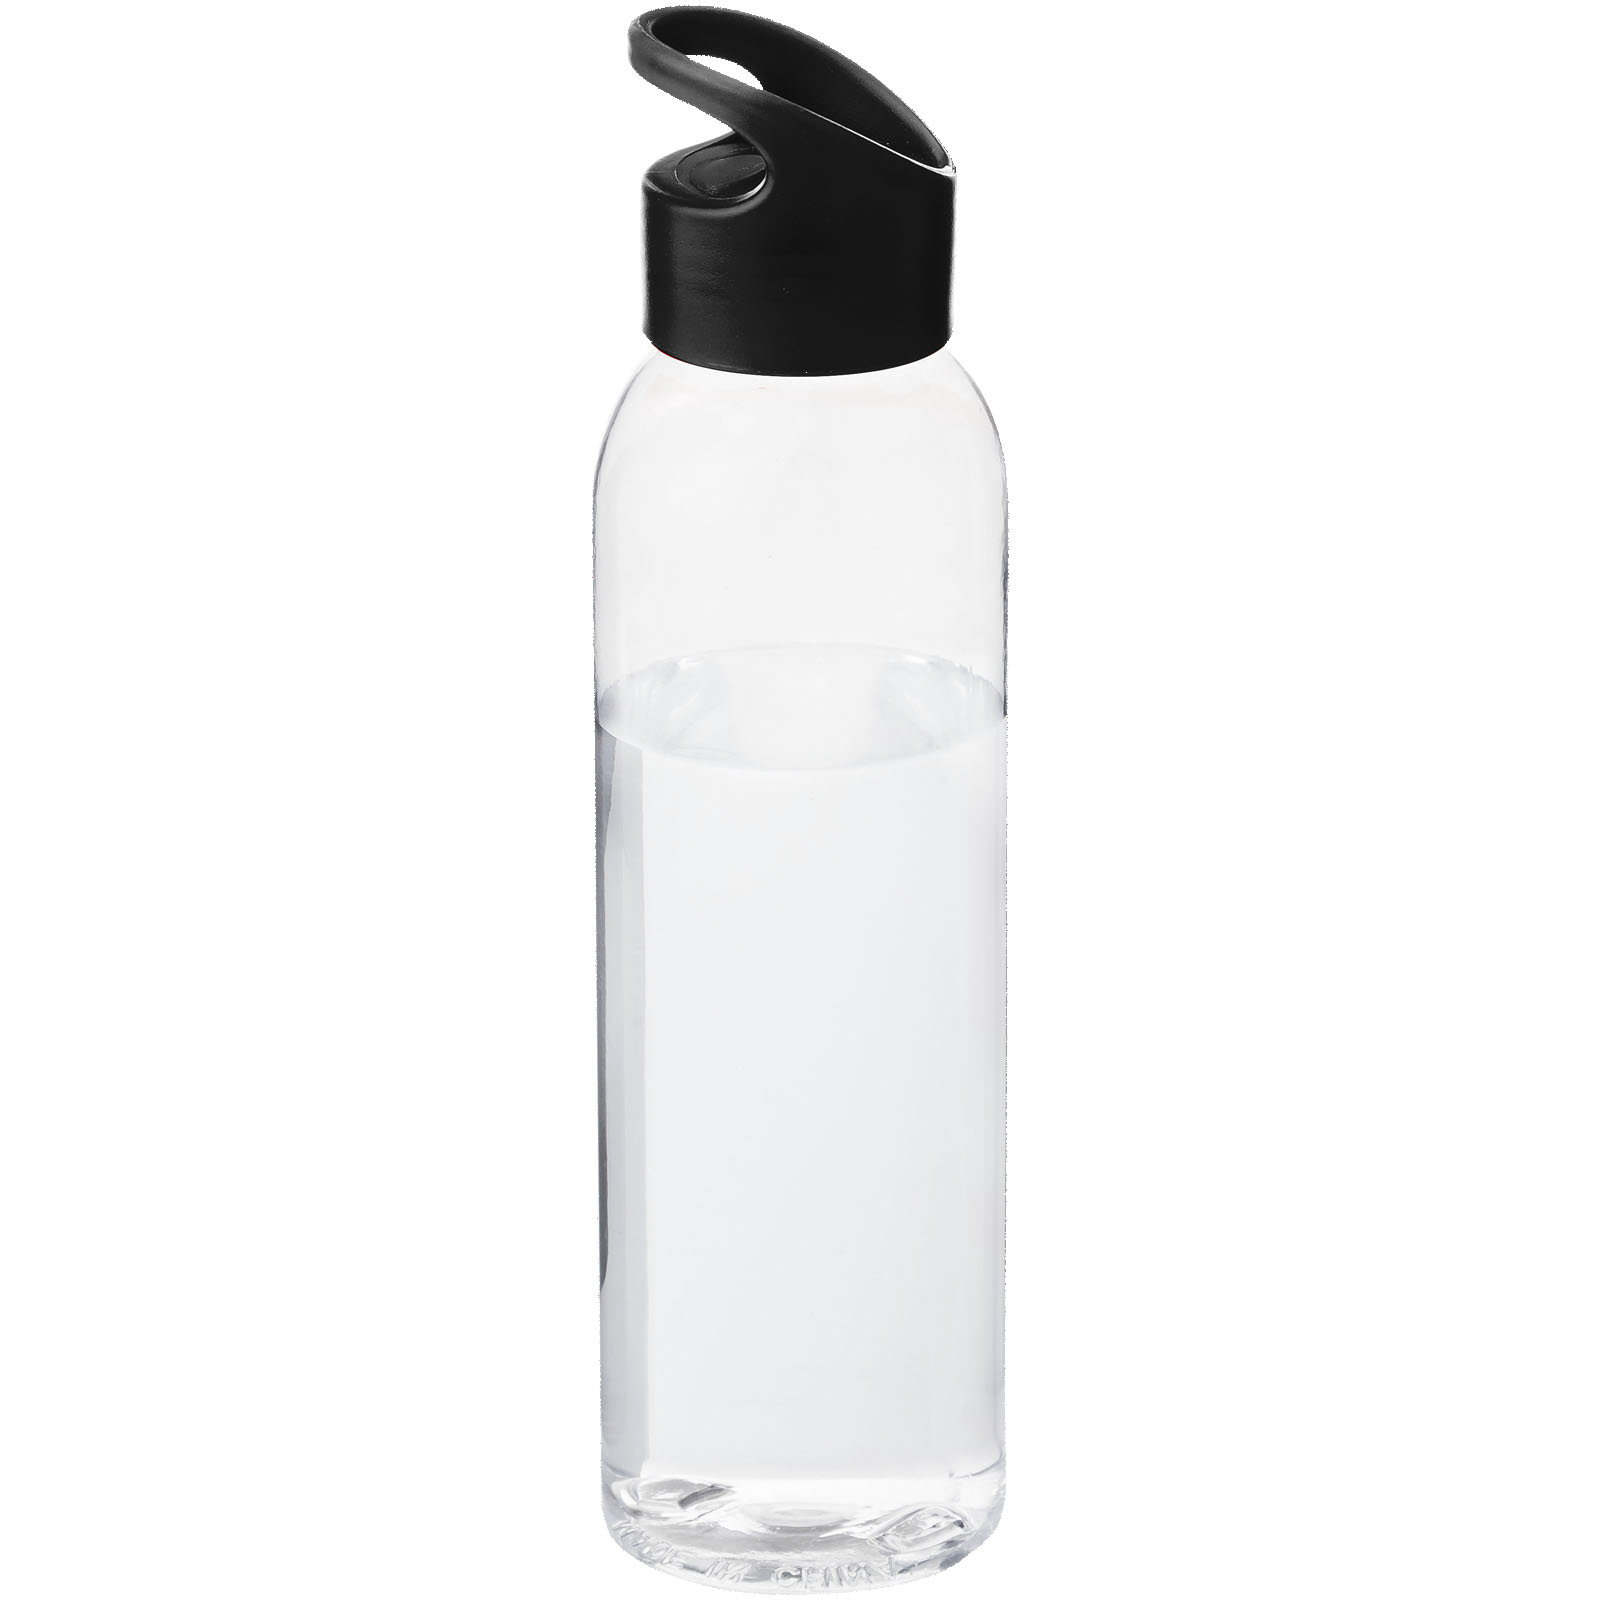 Clear Sky Water Bottle - Piddletrenthide - Braintree